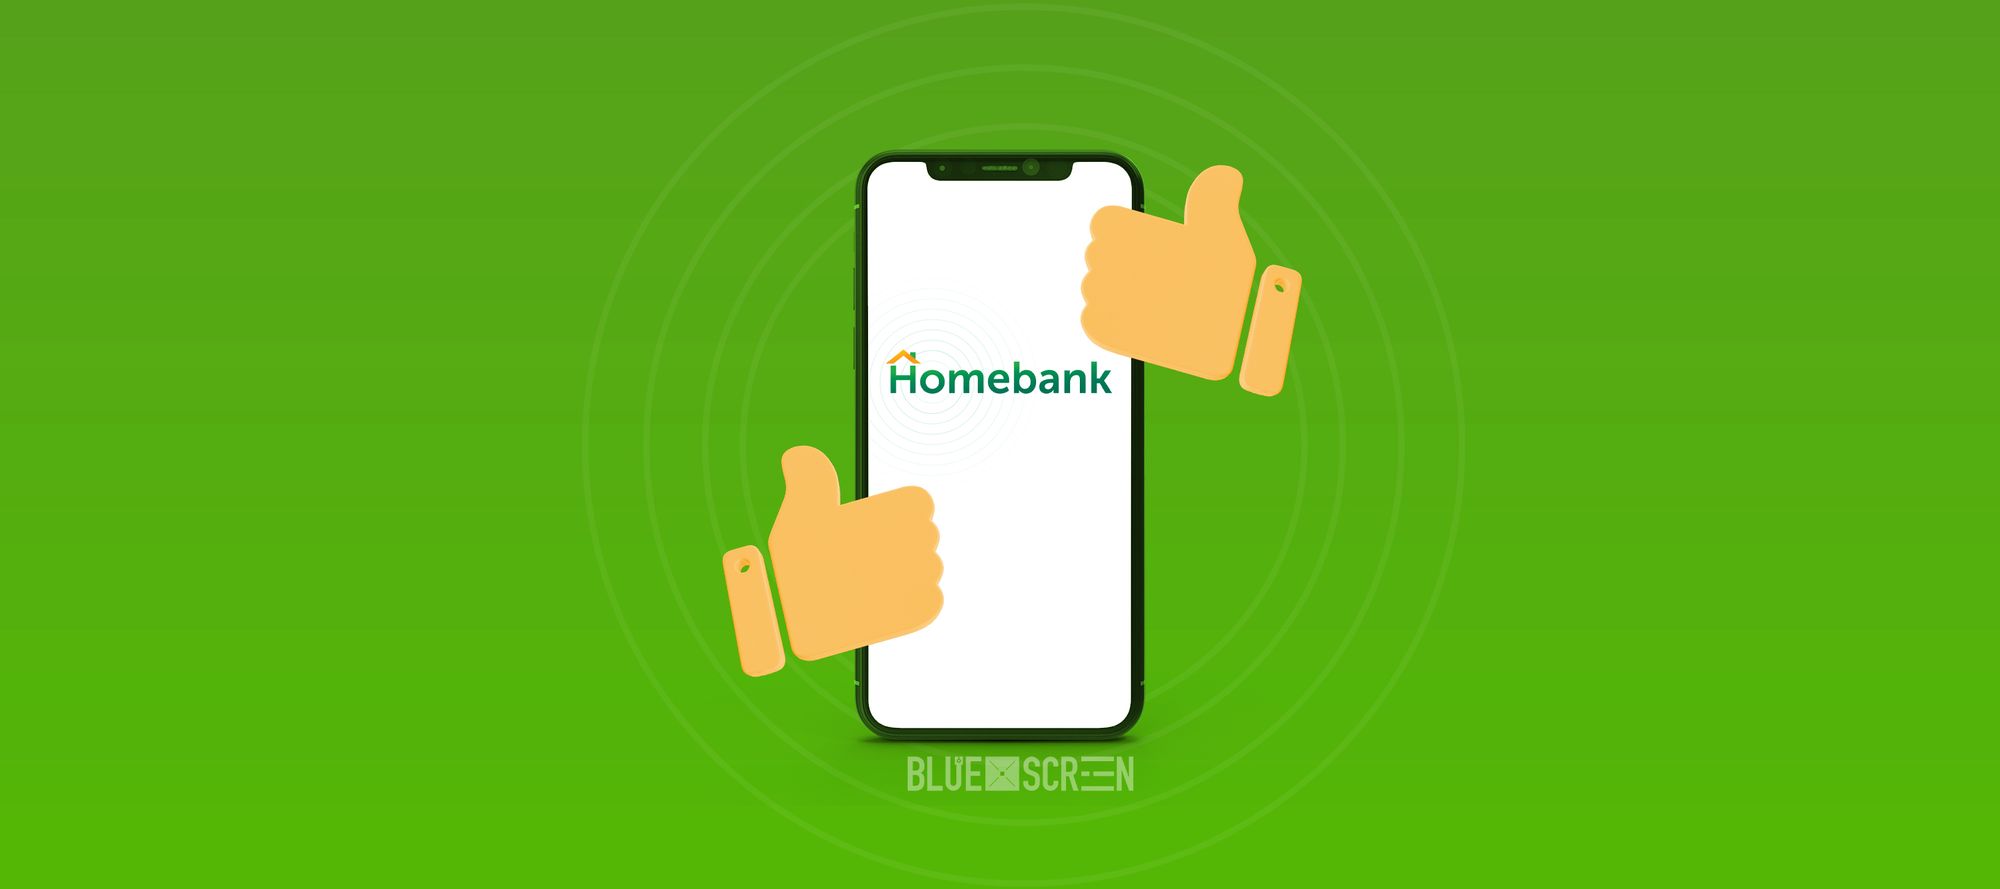 Homebank становится лучше(?)